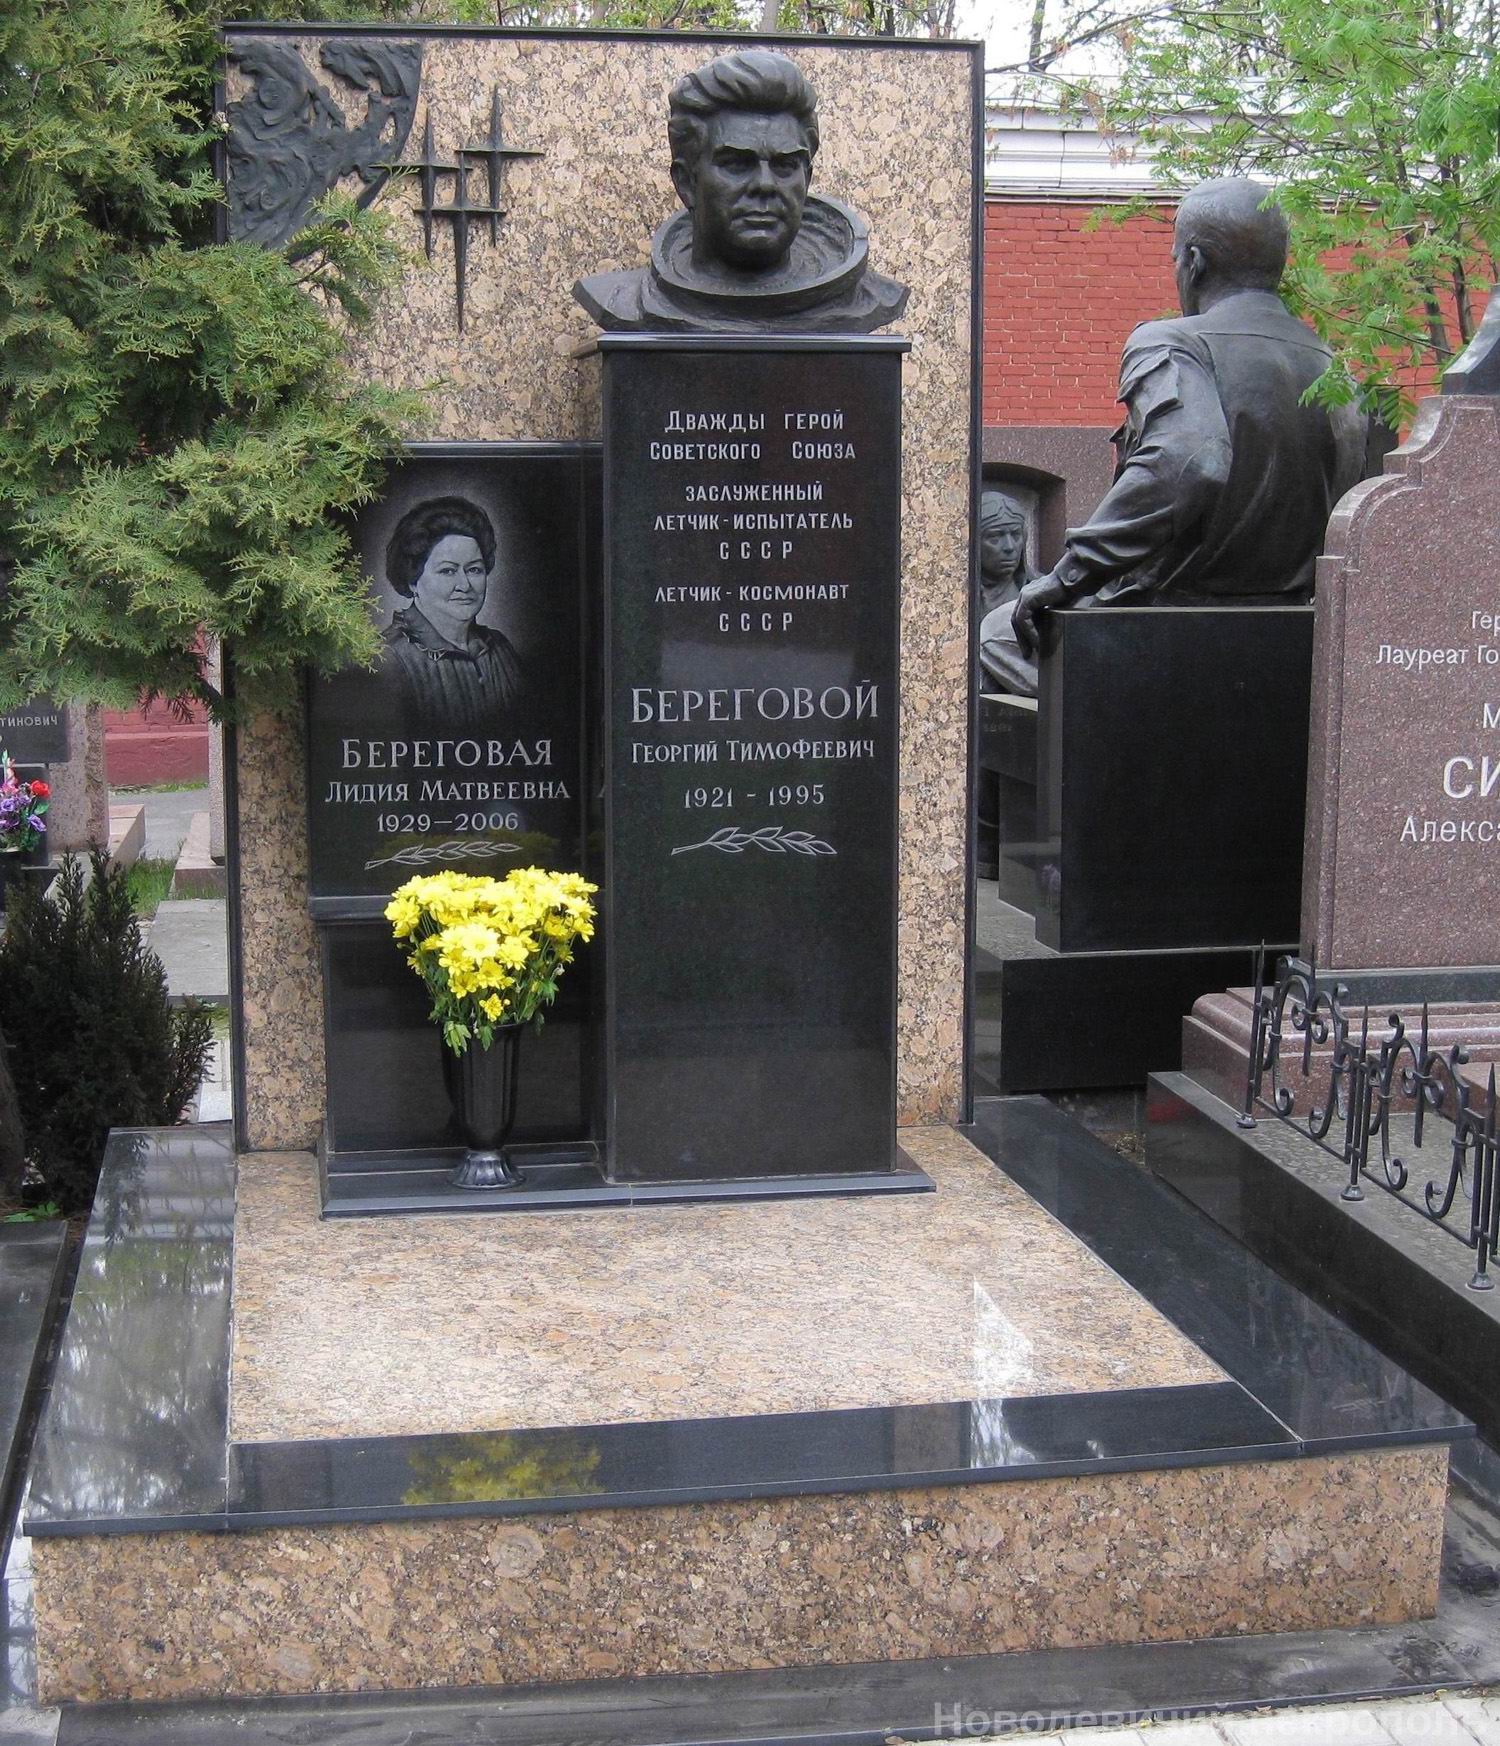 Памятник на могиле Берегового Г.Т. (1921–1995), ск. И.Бичко, на Новодевичьем кладбище (11–4–7).